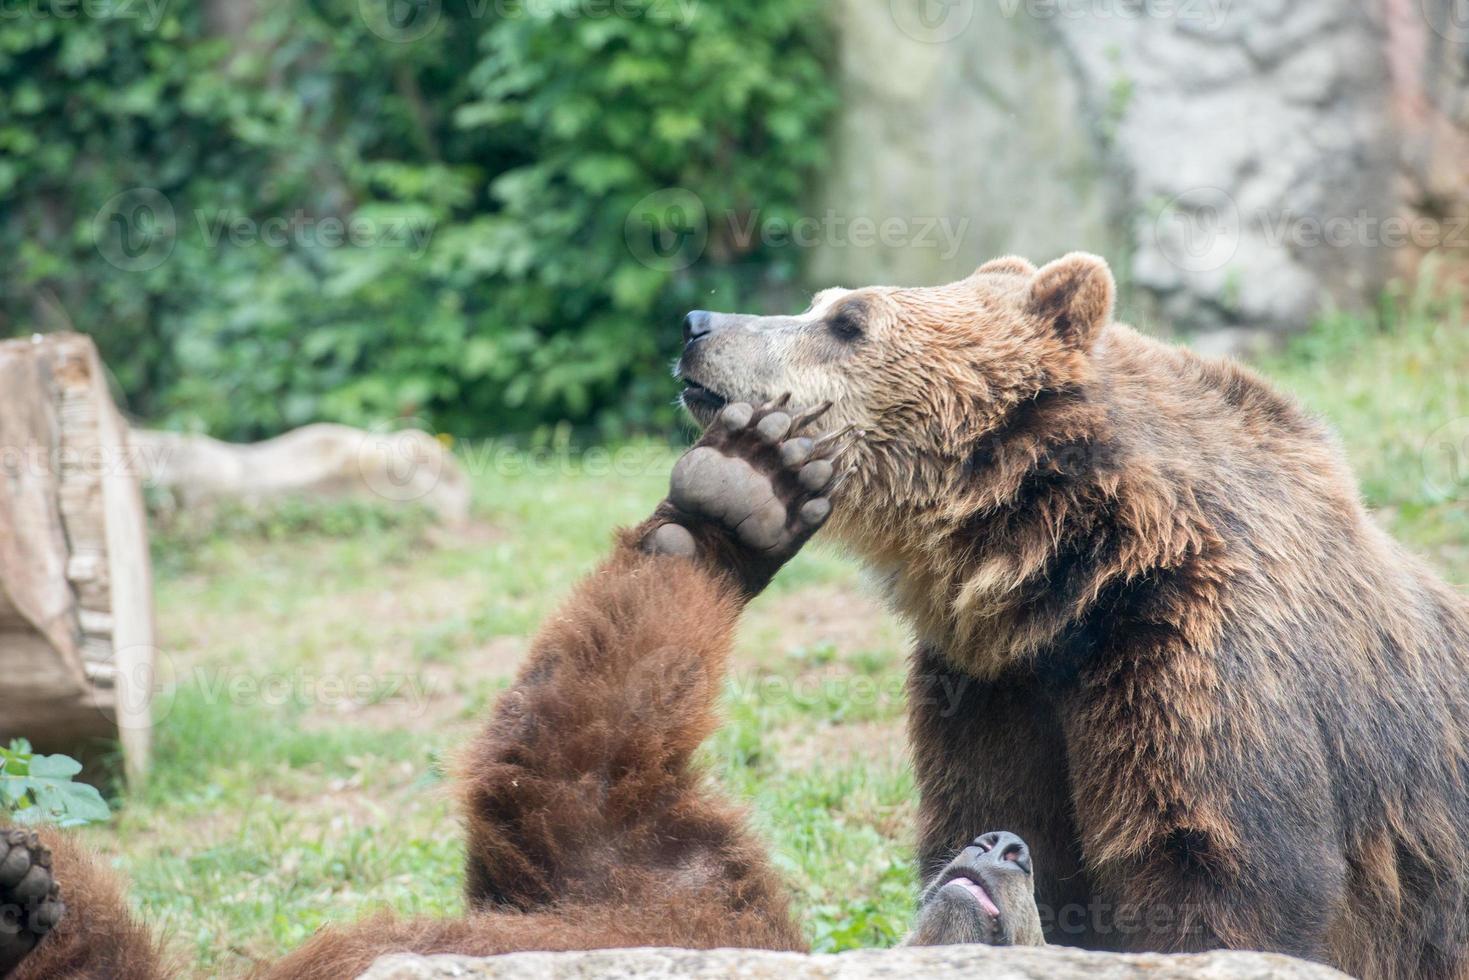 zwart grizzly bears terwijl vechten foto